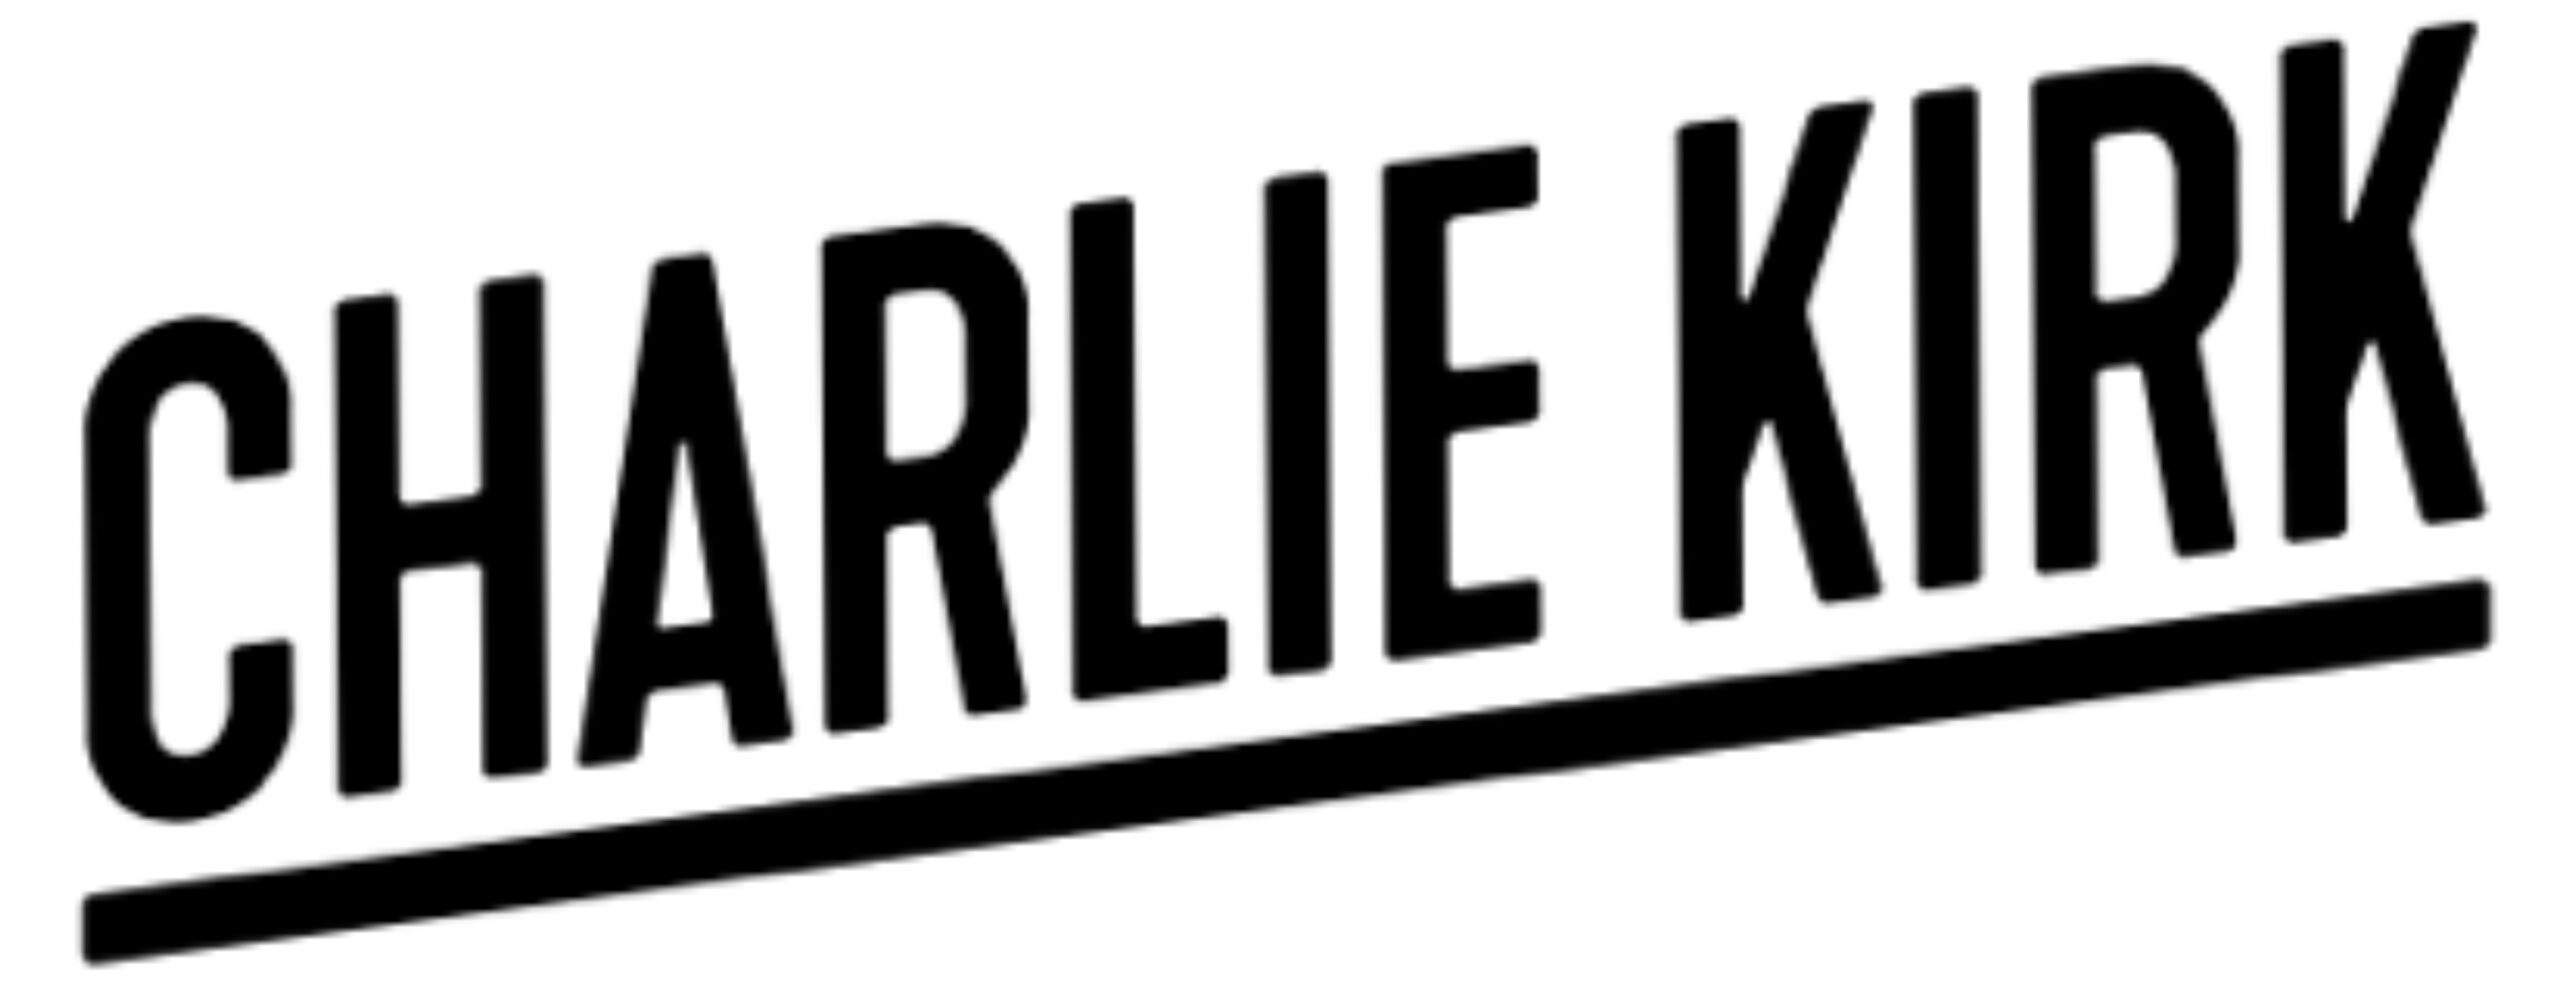 Charlie kirk - logo